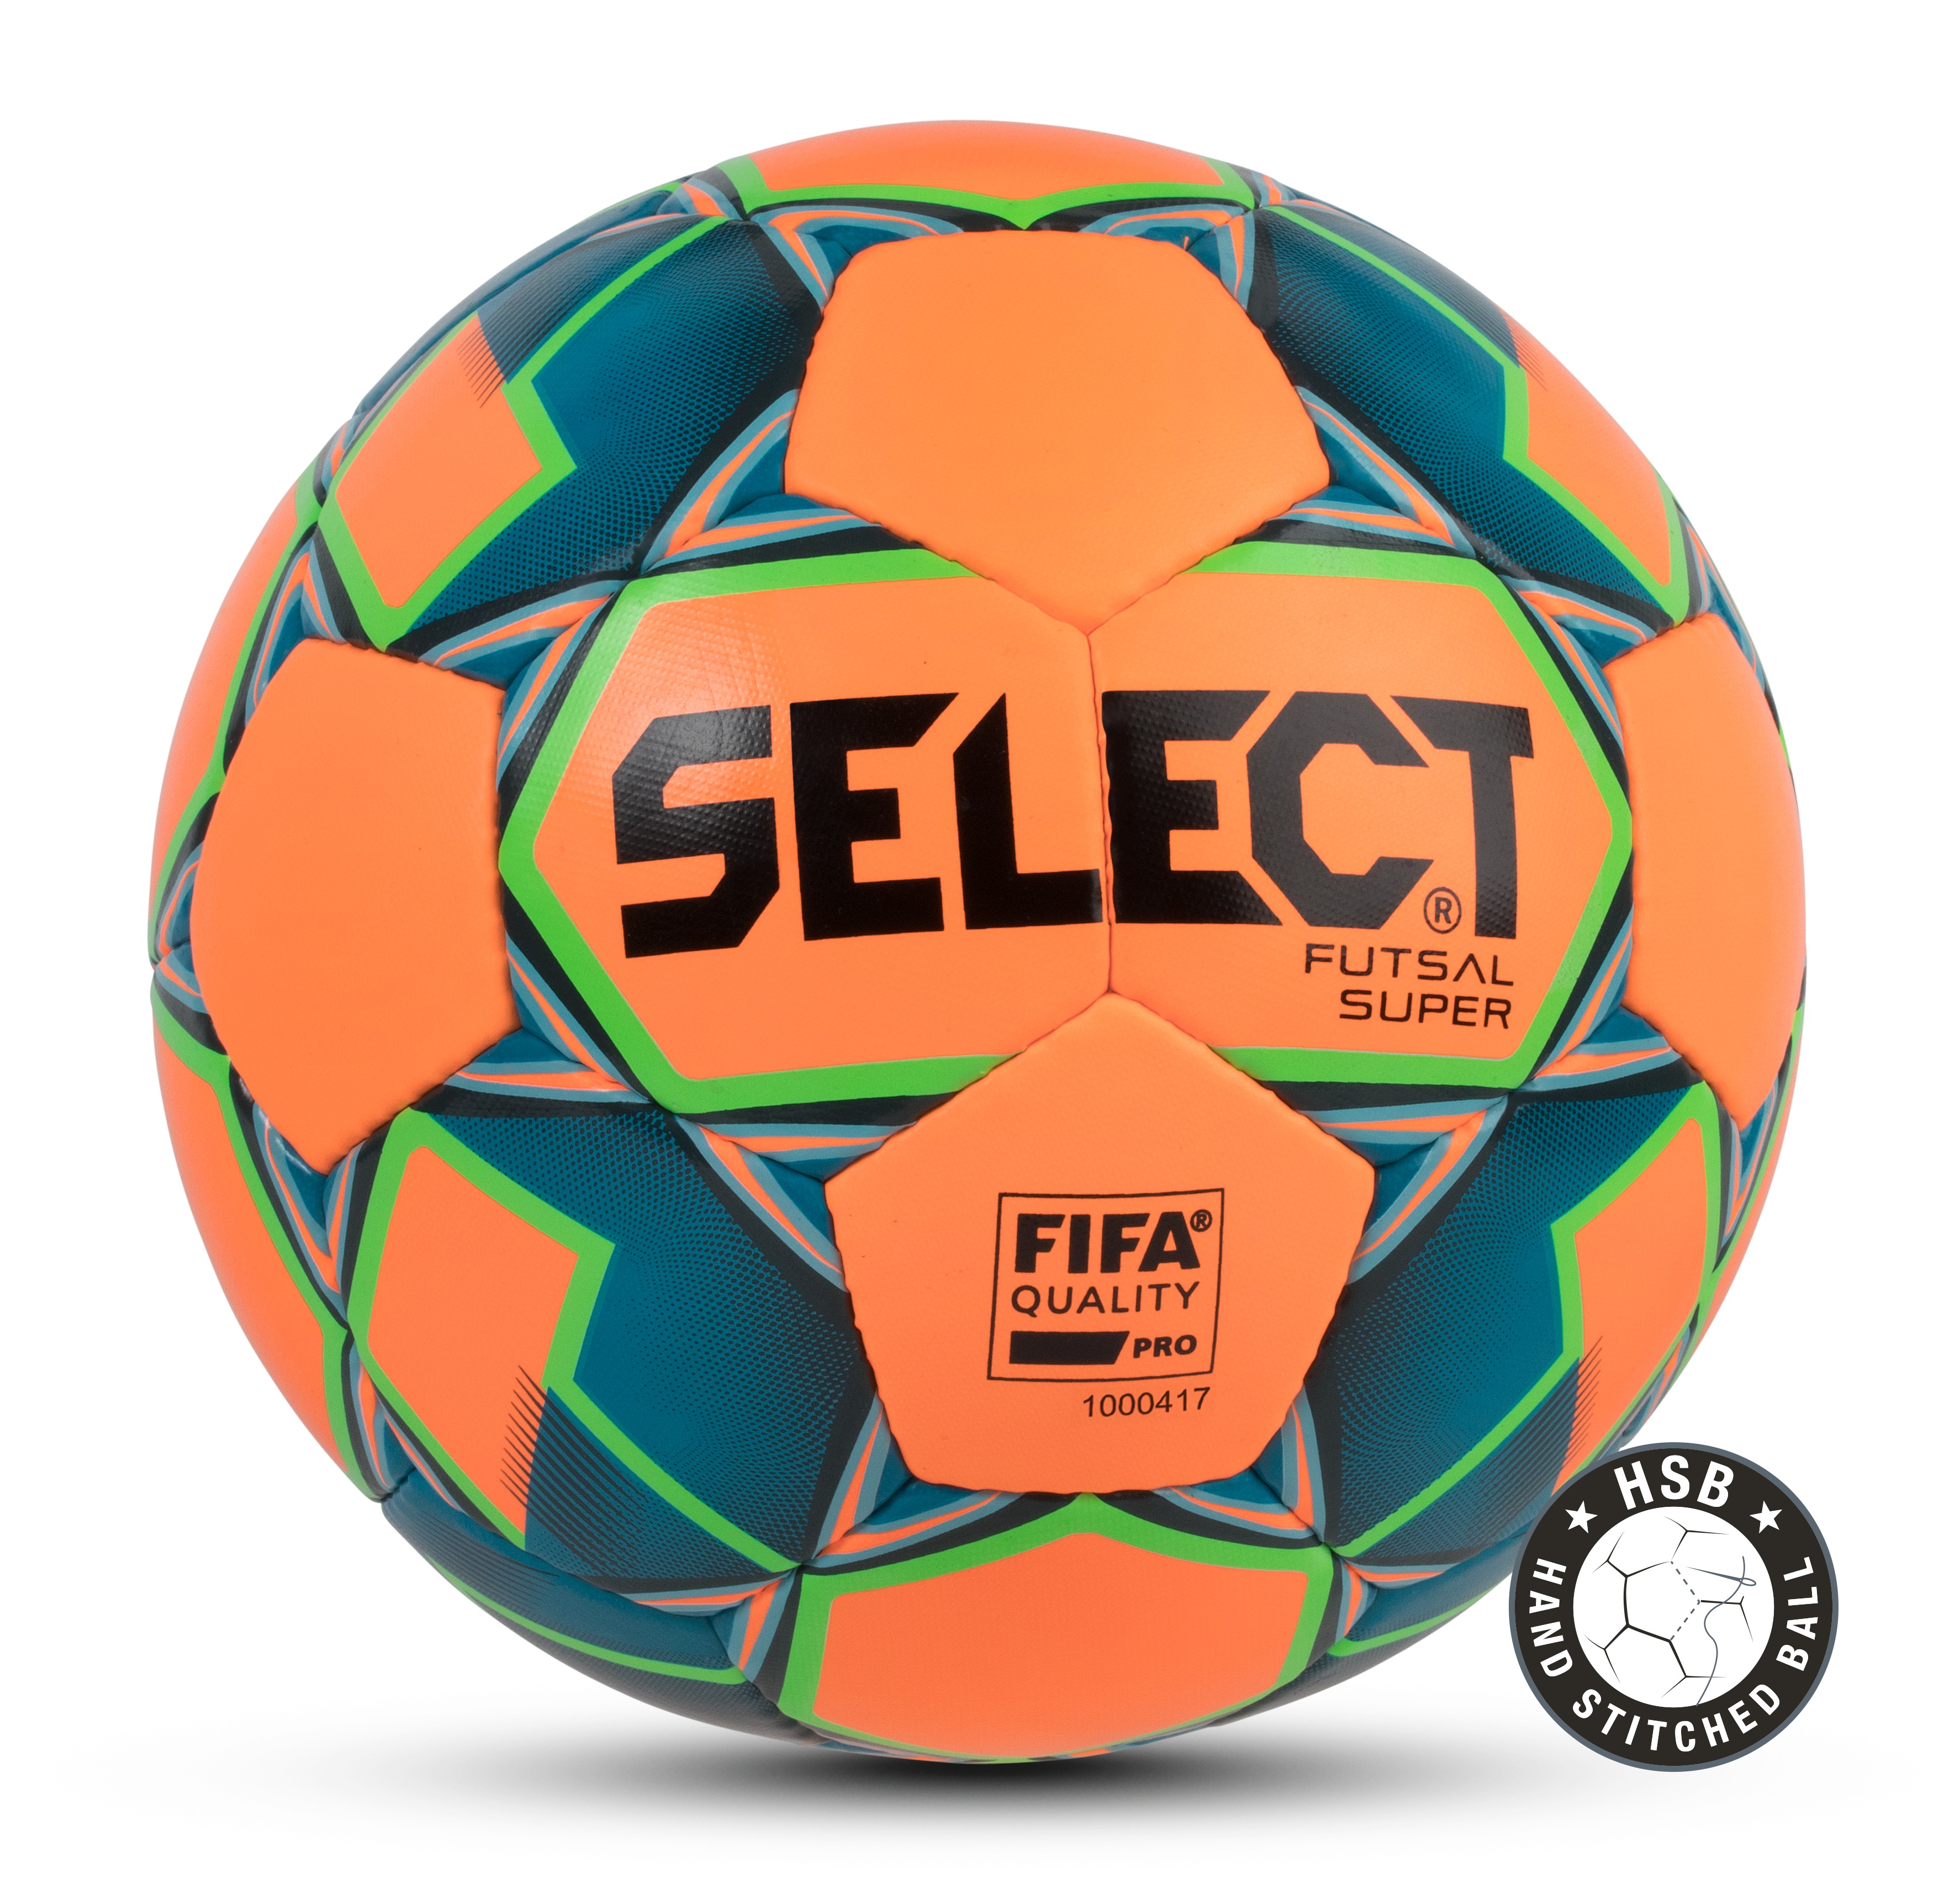 Купить селект. Футзальный мяч Селект. Мяч футзальный select super. Мяч select Futsal super FIFA. Select мяч 4 Futsal super League.